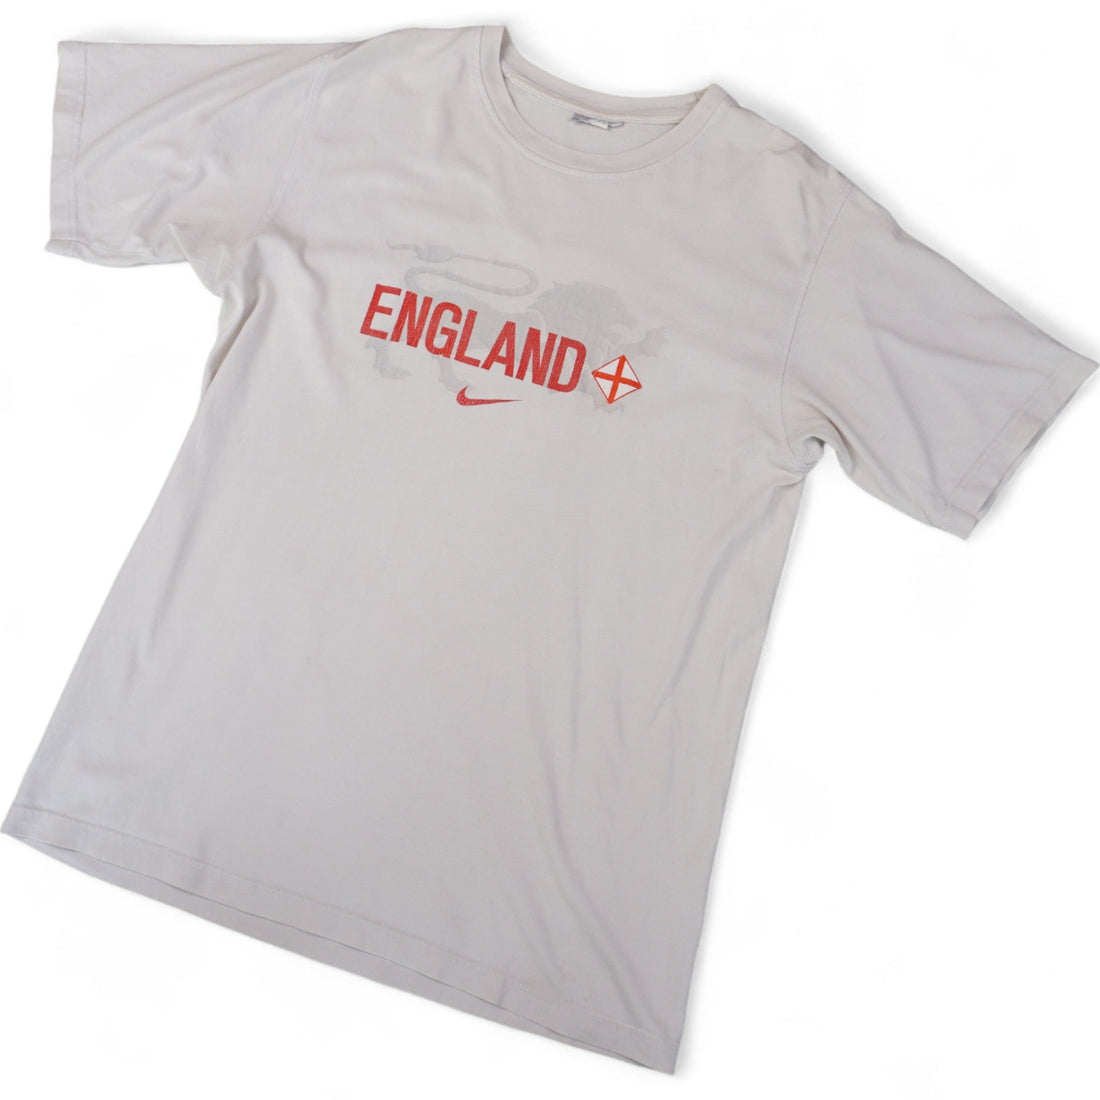 Nike Vintage England Tshirt (L)